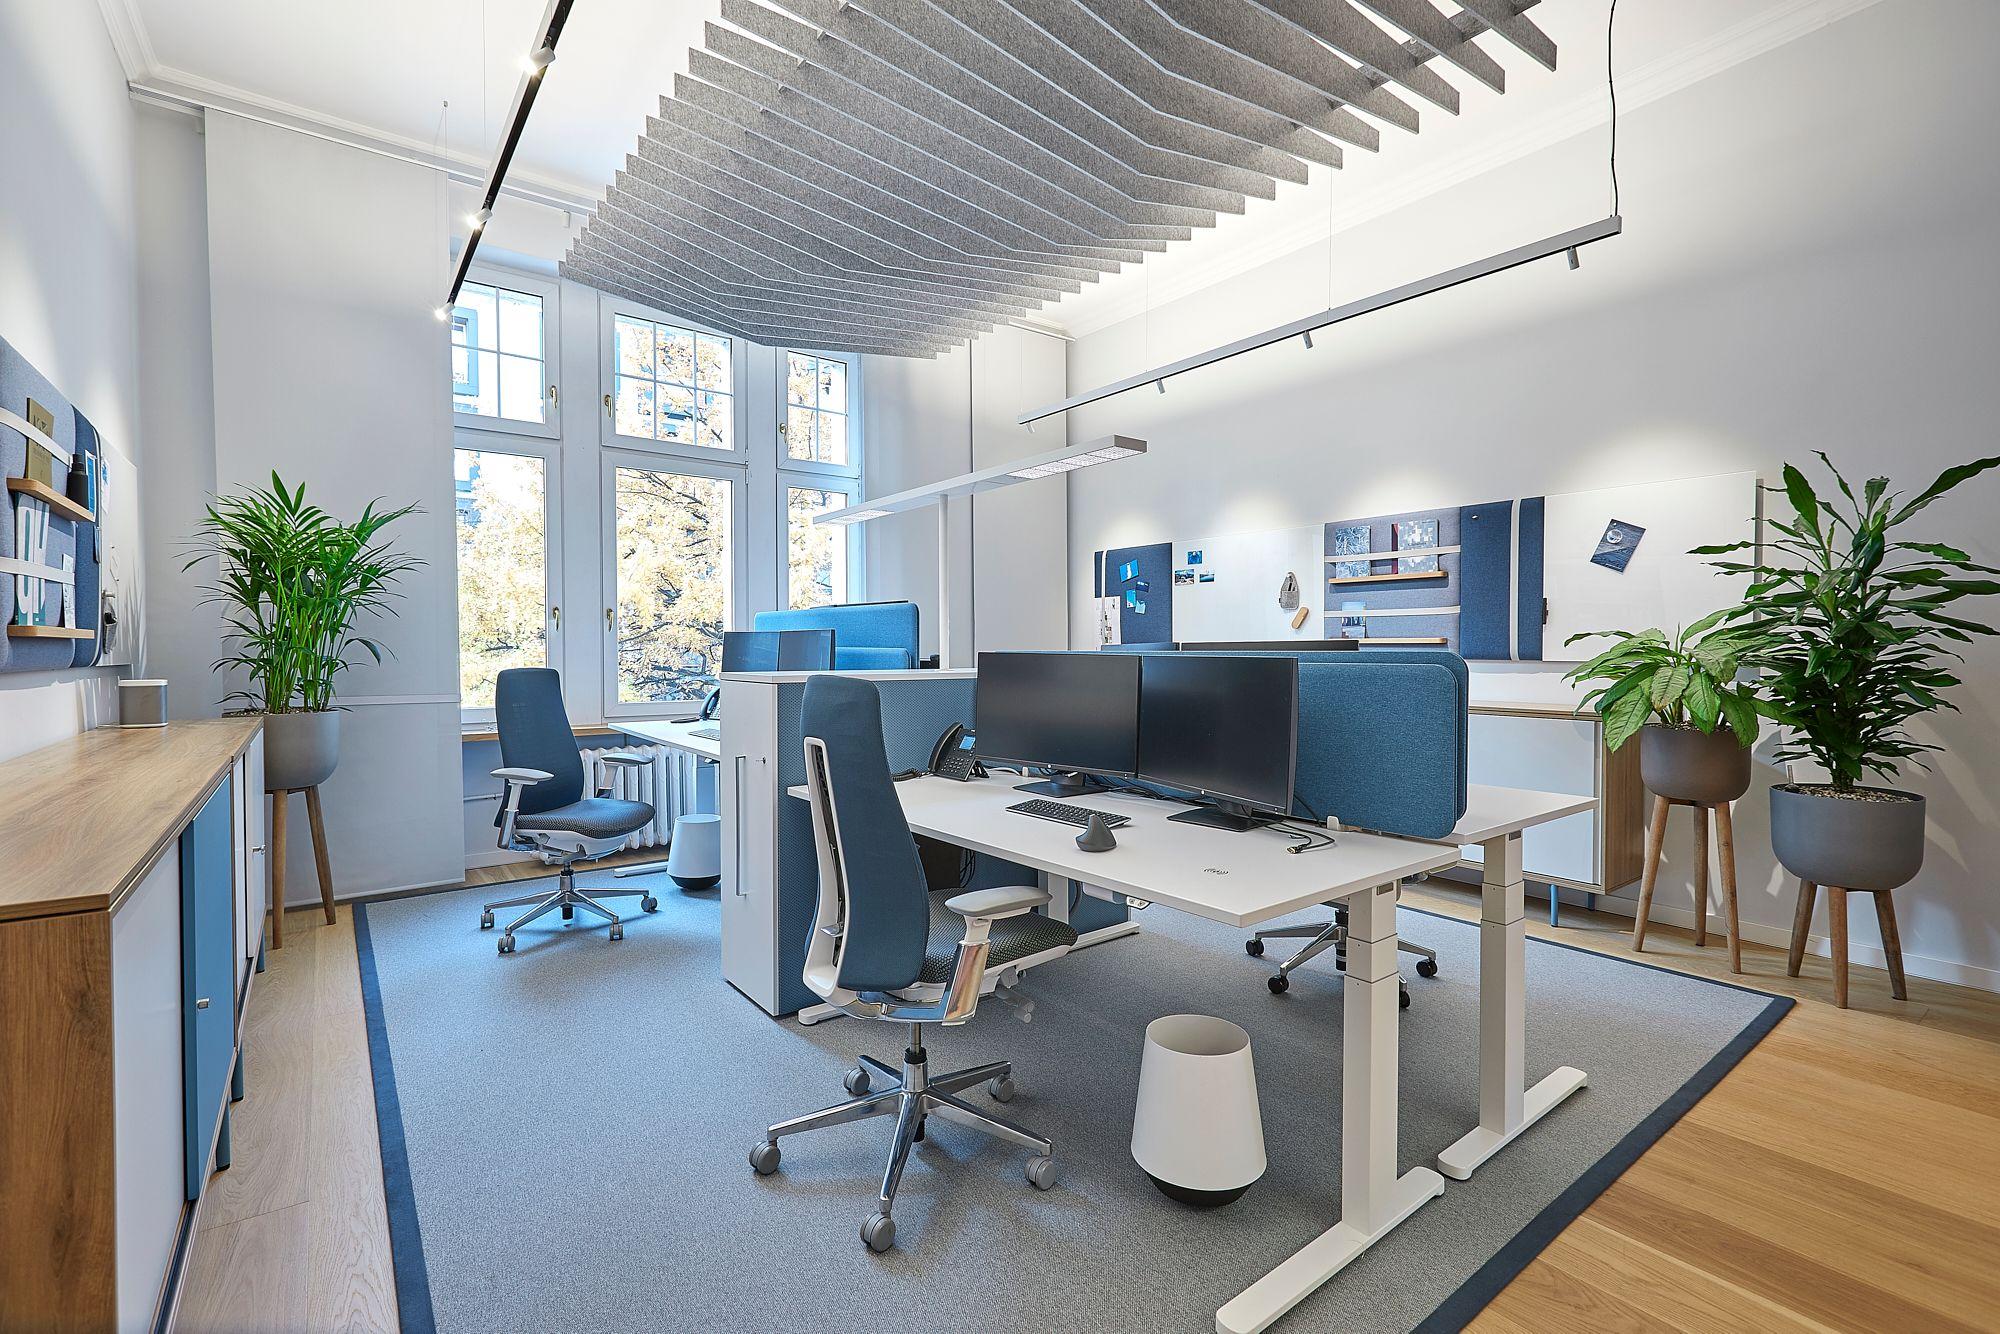 Ein Teil des Büros von GRAEF mit Arbeitsplätzen in blauer Farbe